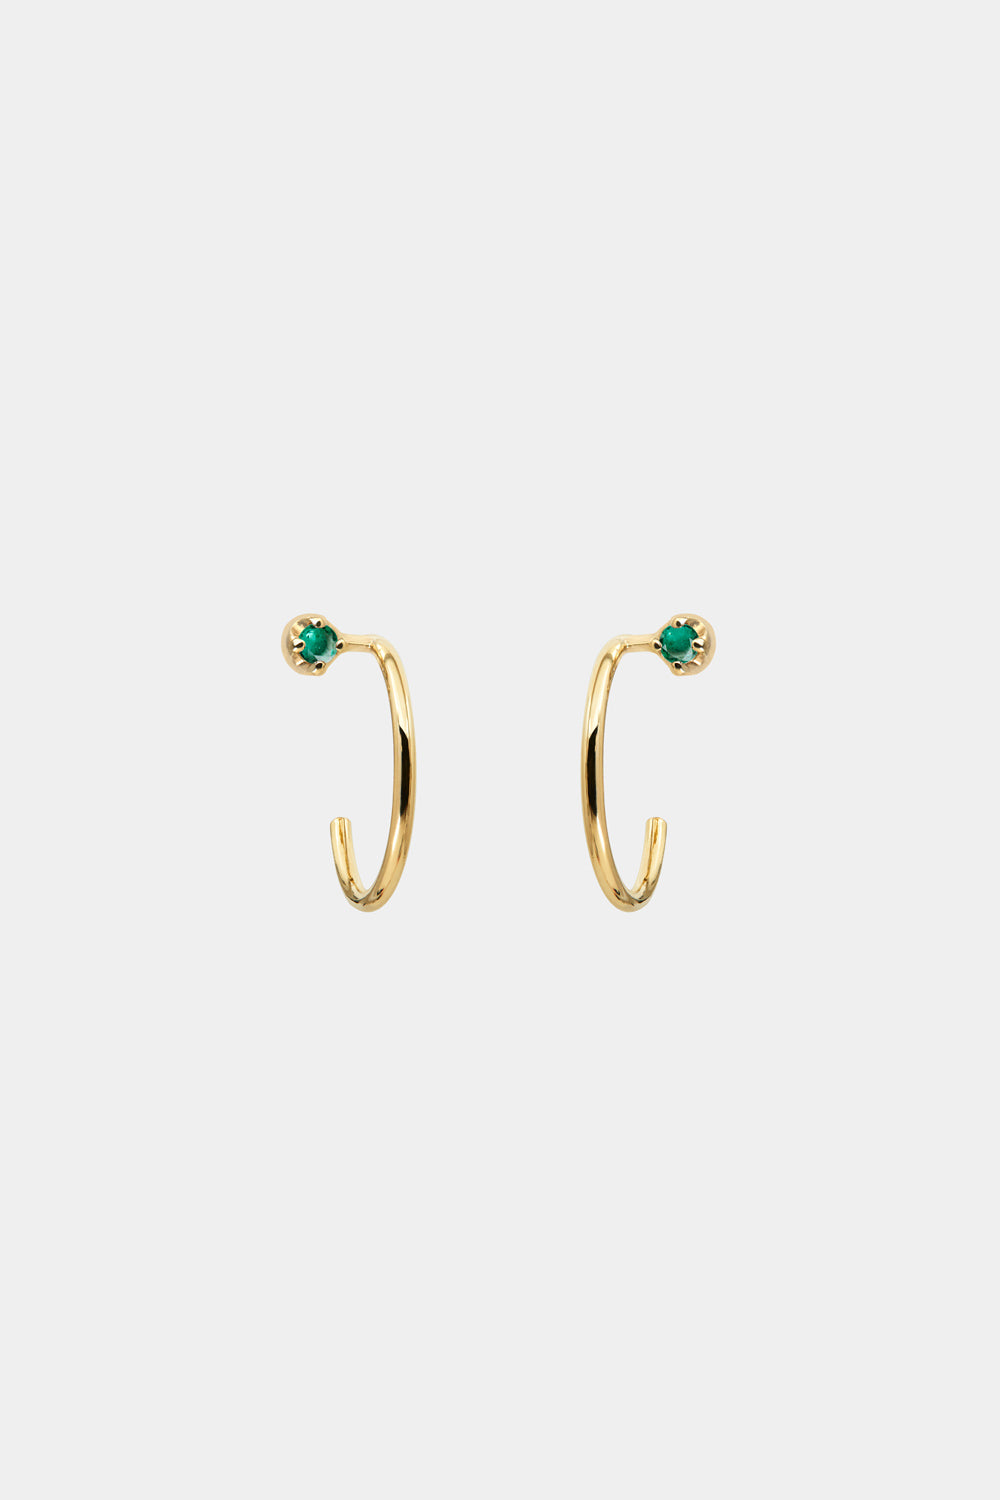 Mini Lara Emerald Hoop Earrings | 9K Yellow Gold| Natasha Schweitzer